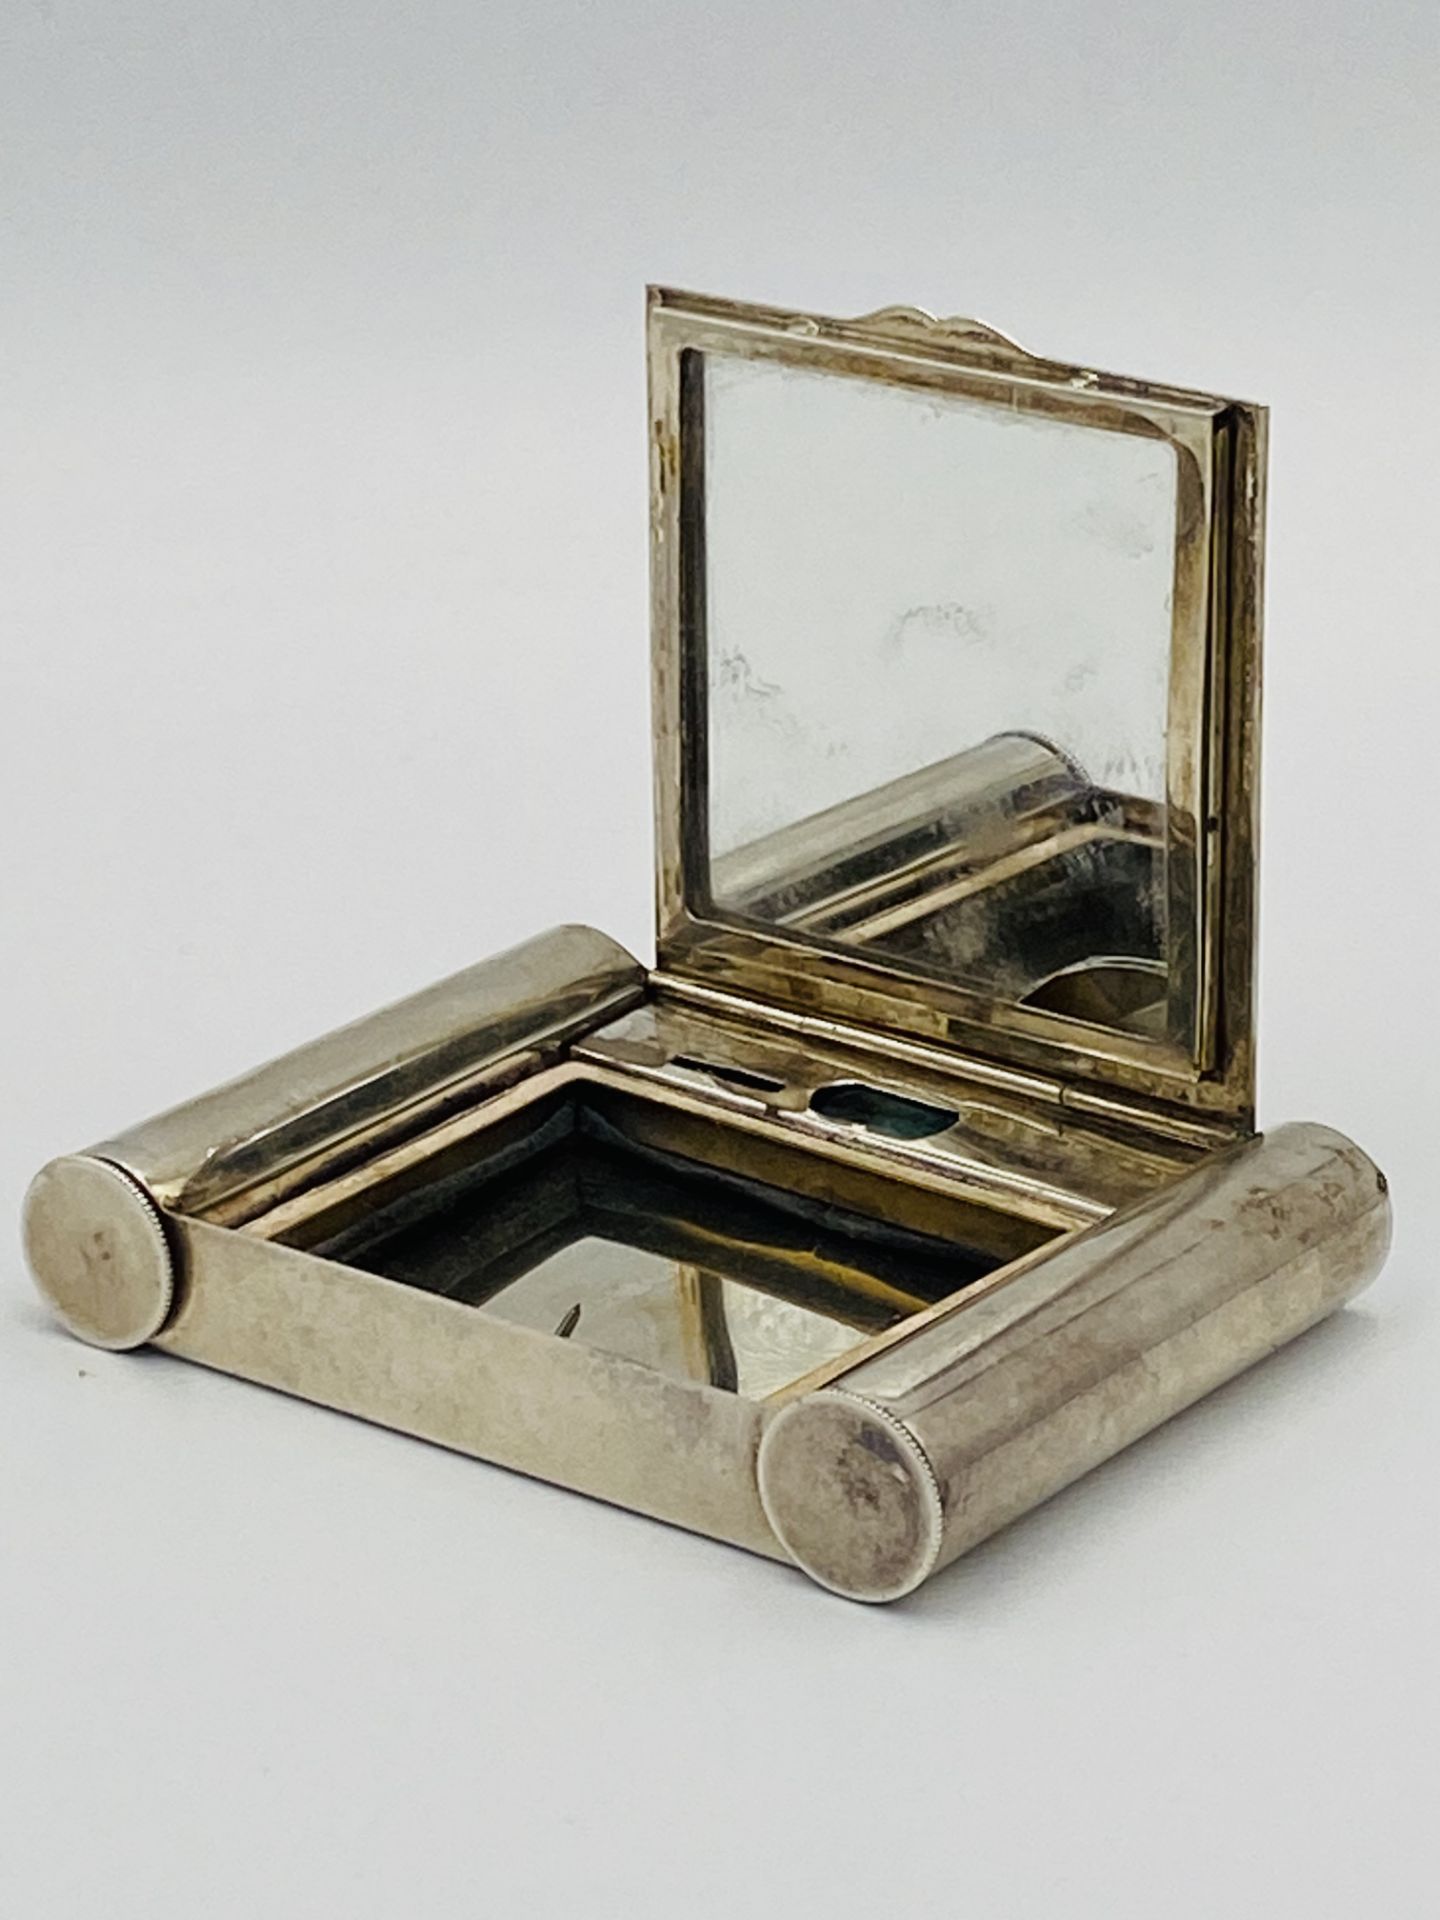 Silver case by Deakin & Francis, Birmingham 1934 - Image 2 of 5